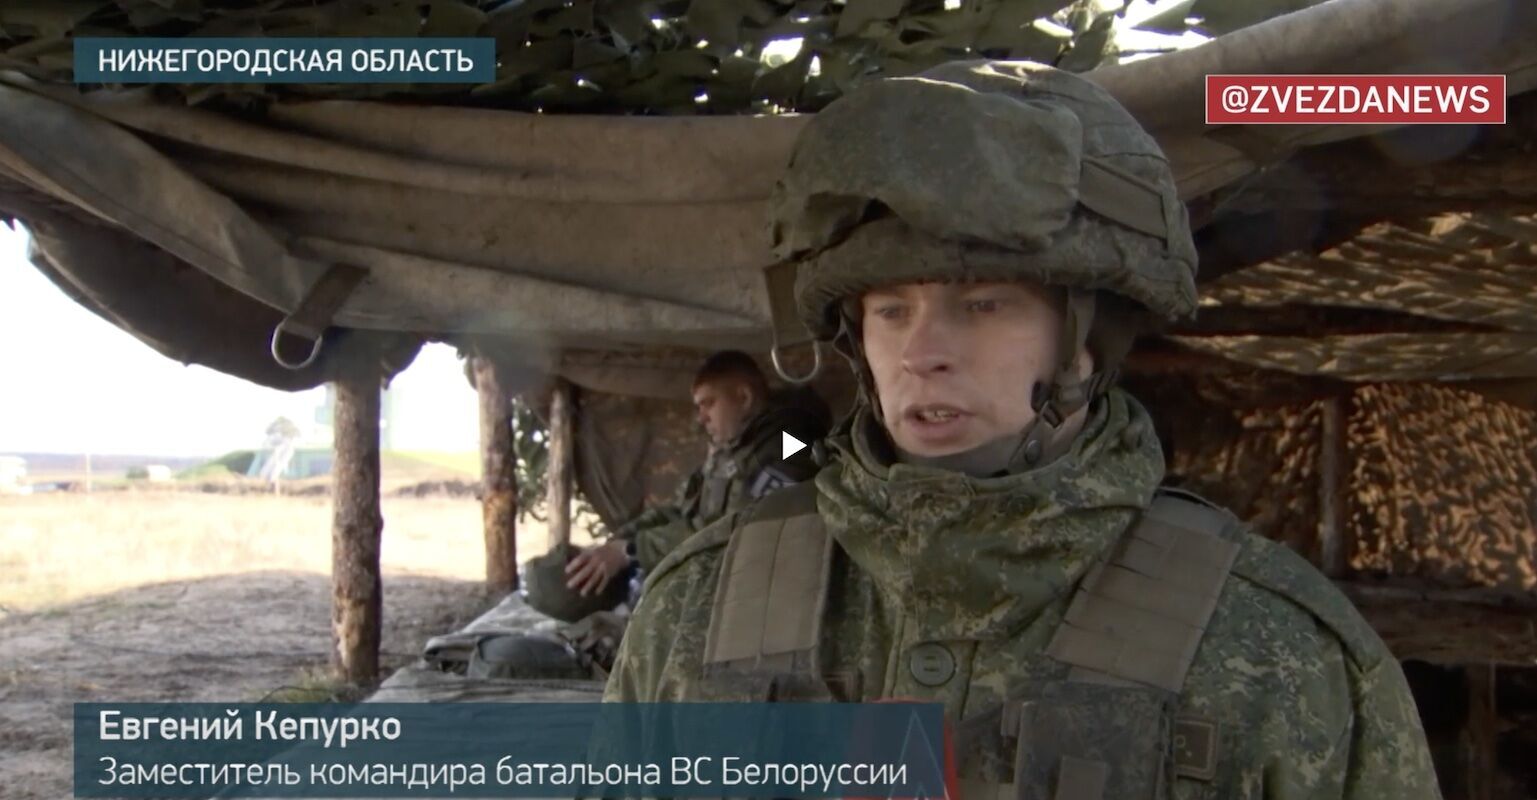 "Спершу оборона, потім наступ": білоруські військові відпрацьовували тактику ведення бойових дій на полігоні Муліно в Росії